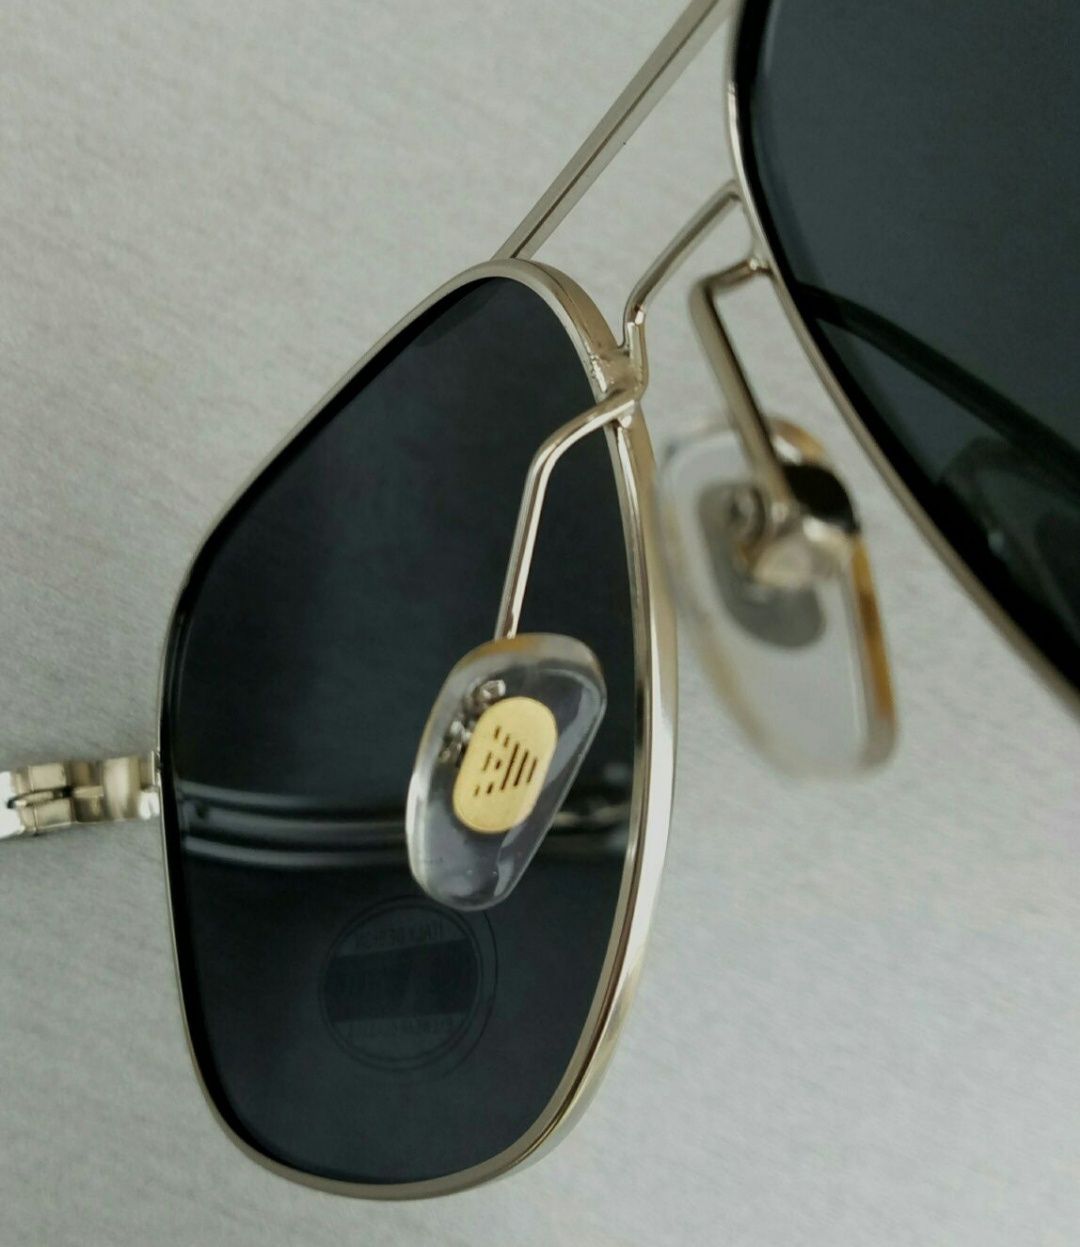 Emporio Armani очки мужские классика черные в серебр металле в мешочке